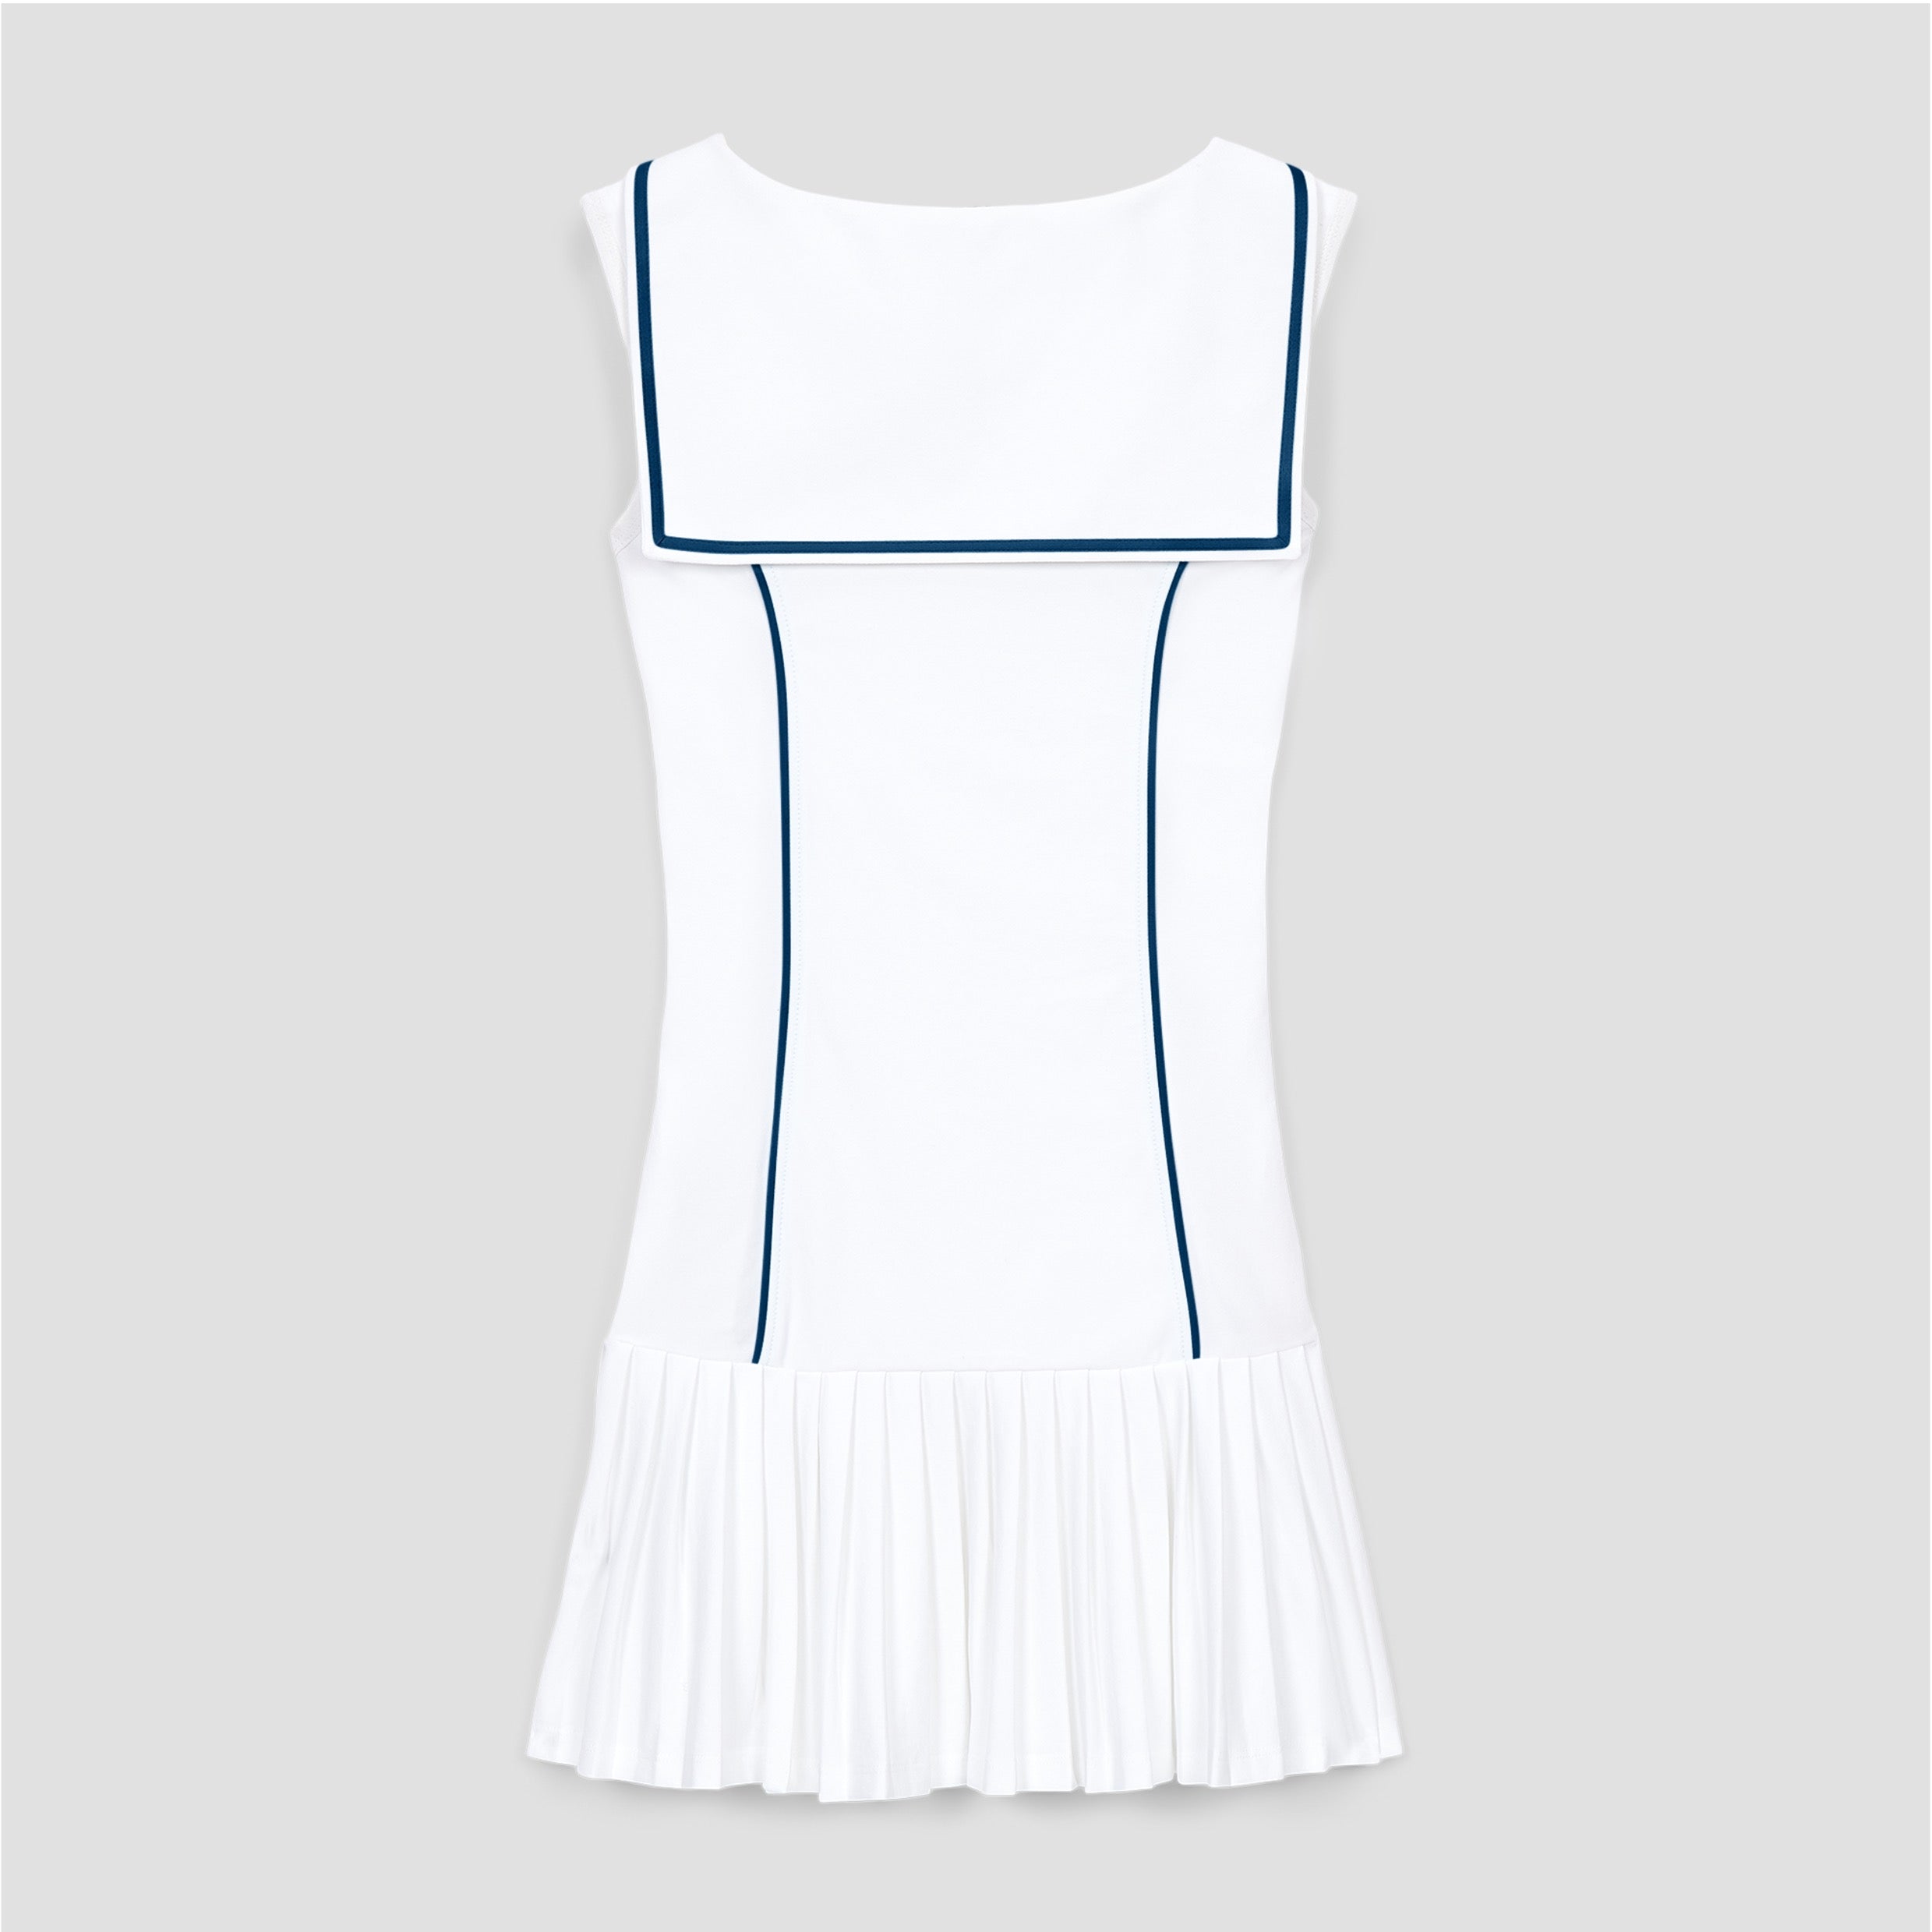 The Duchess Tennis Dress